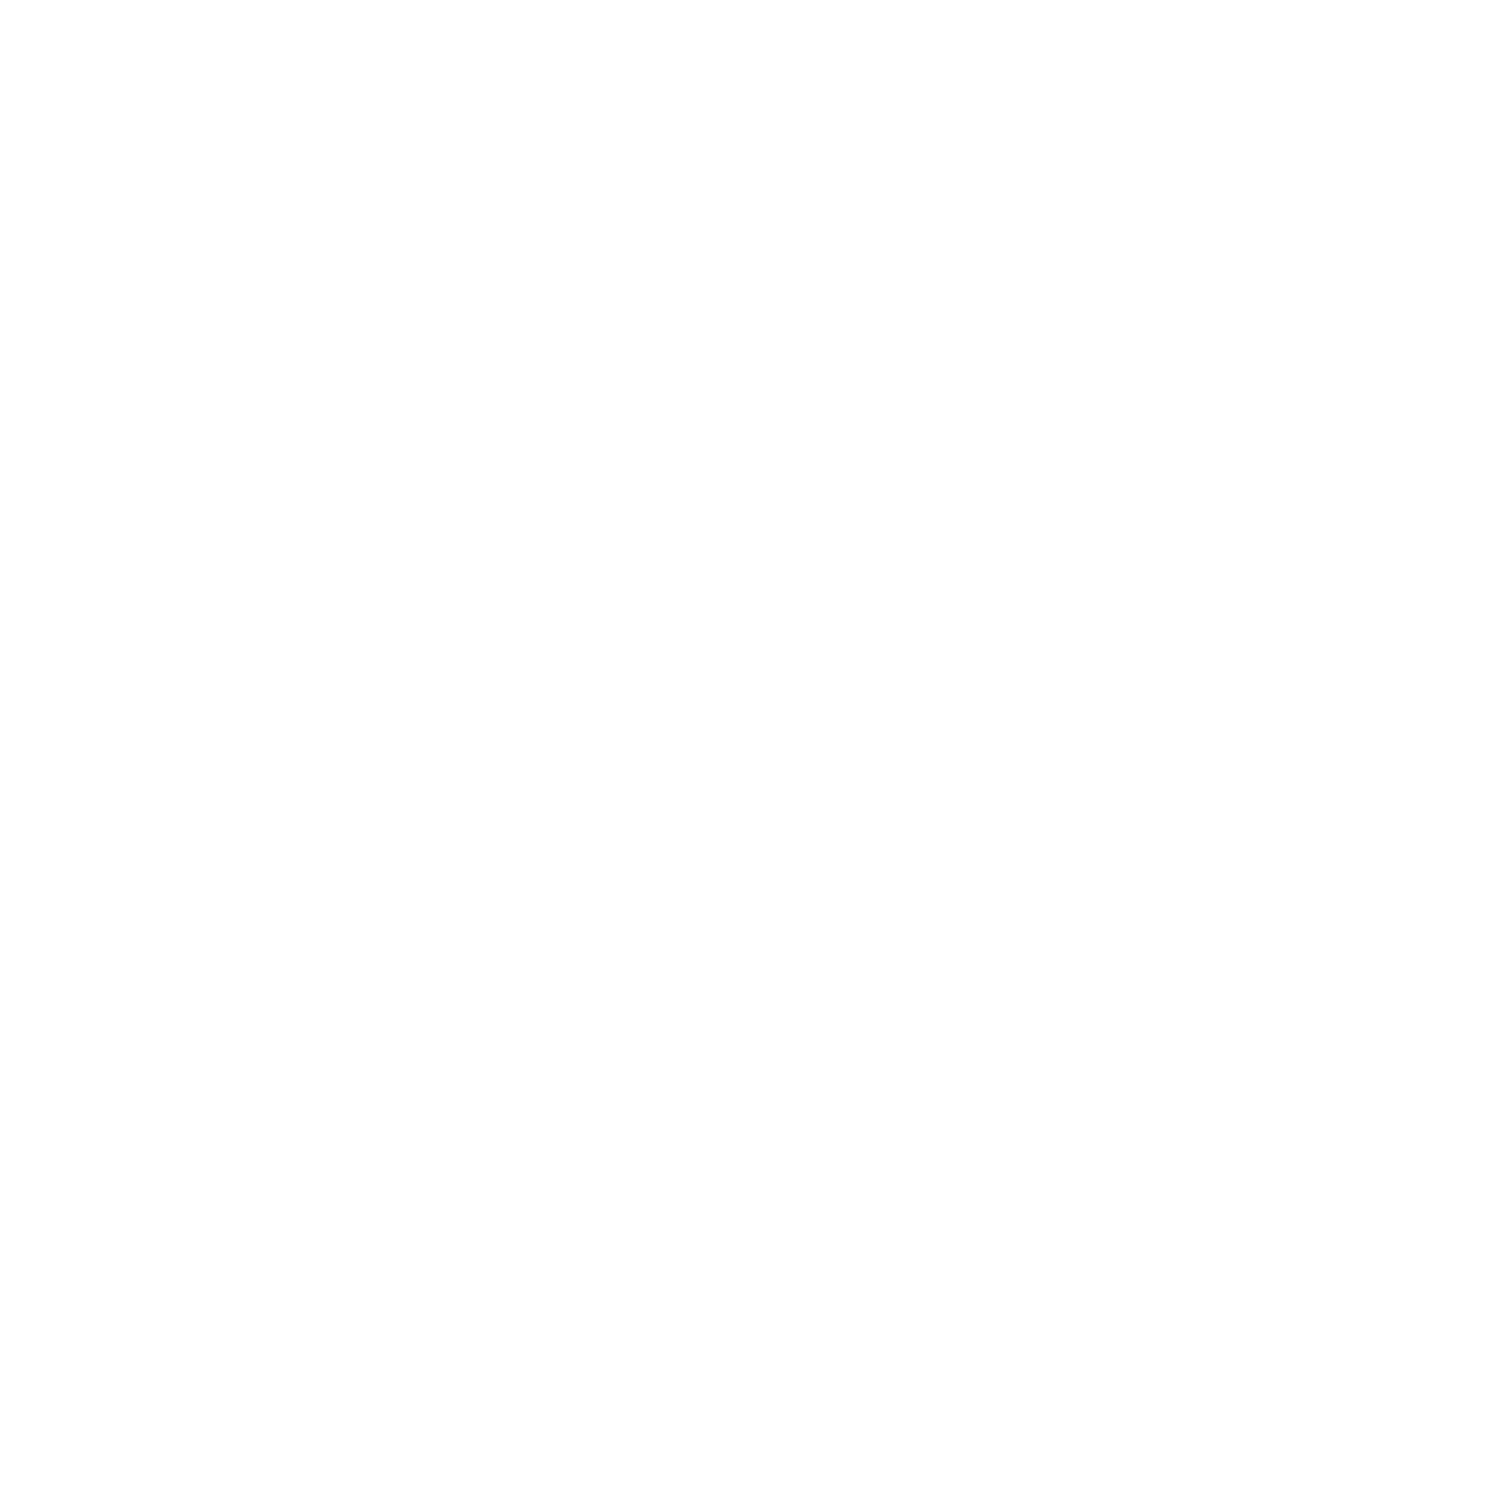 POPP Velourstex